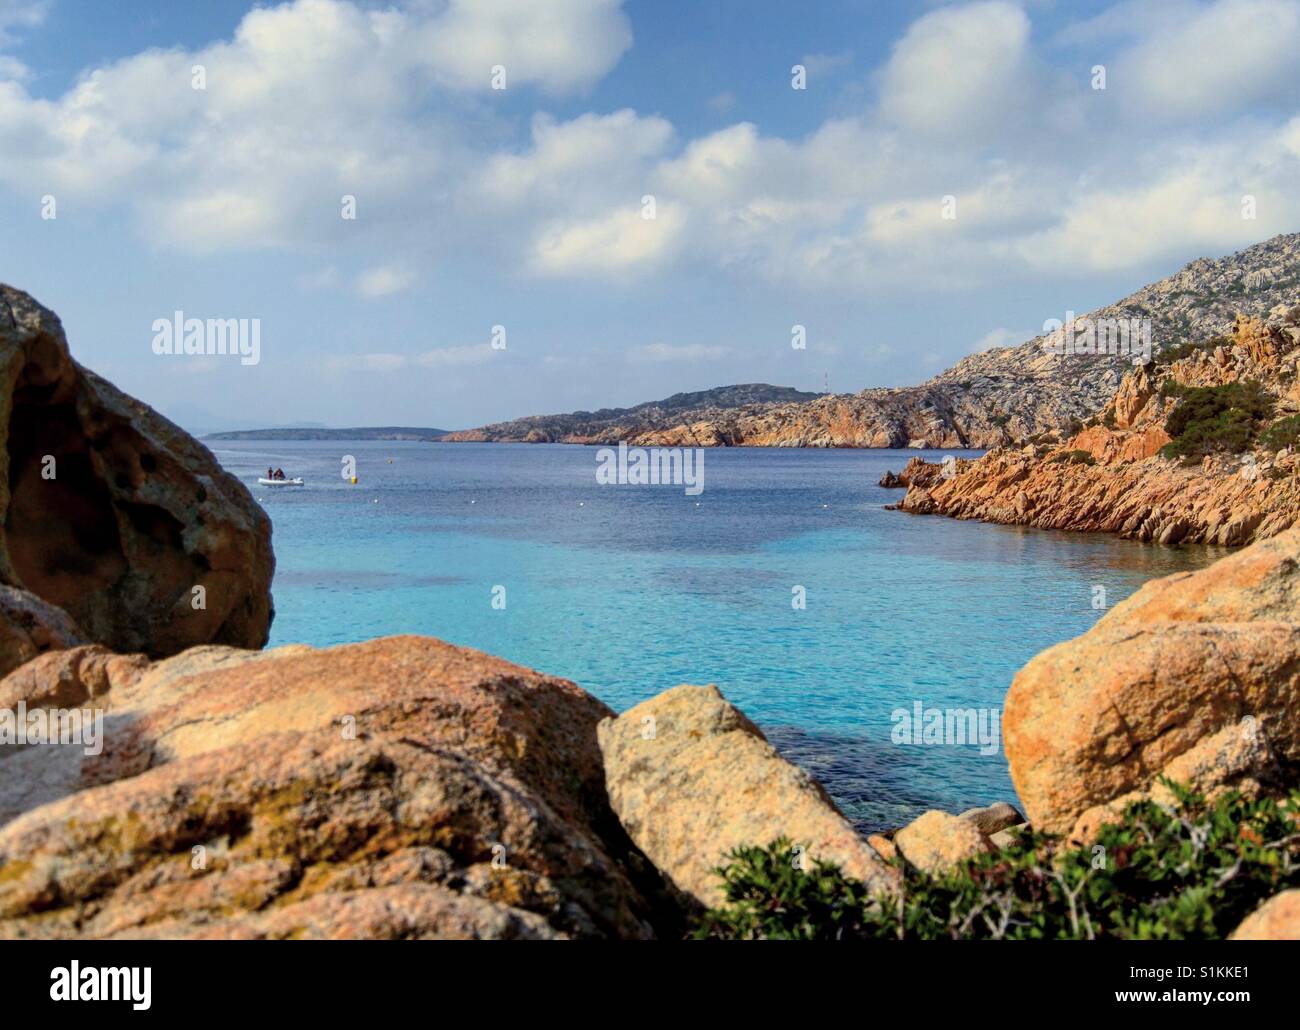 Sardegna - Italy Stock Photo